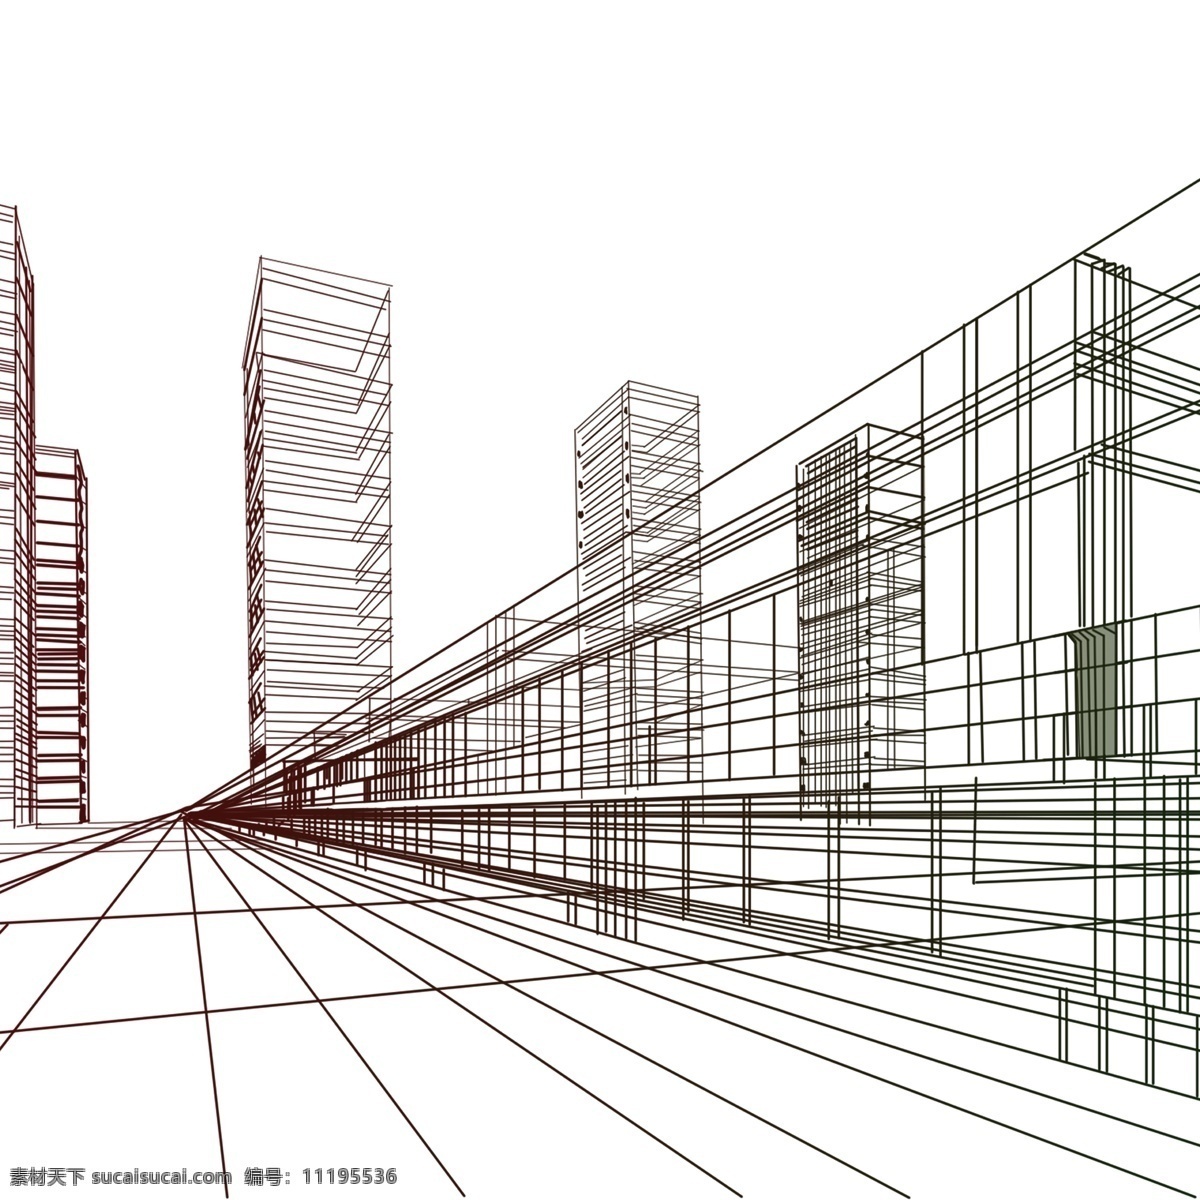 城市 建筑 透视 线条 素材图片 城市建筑 透视线条